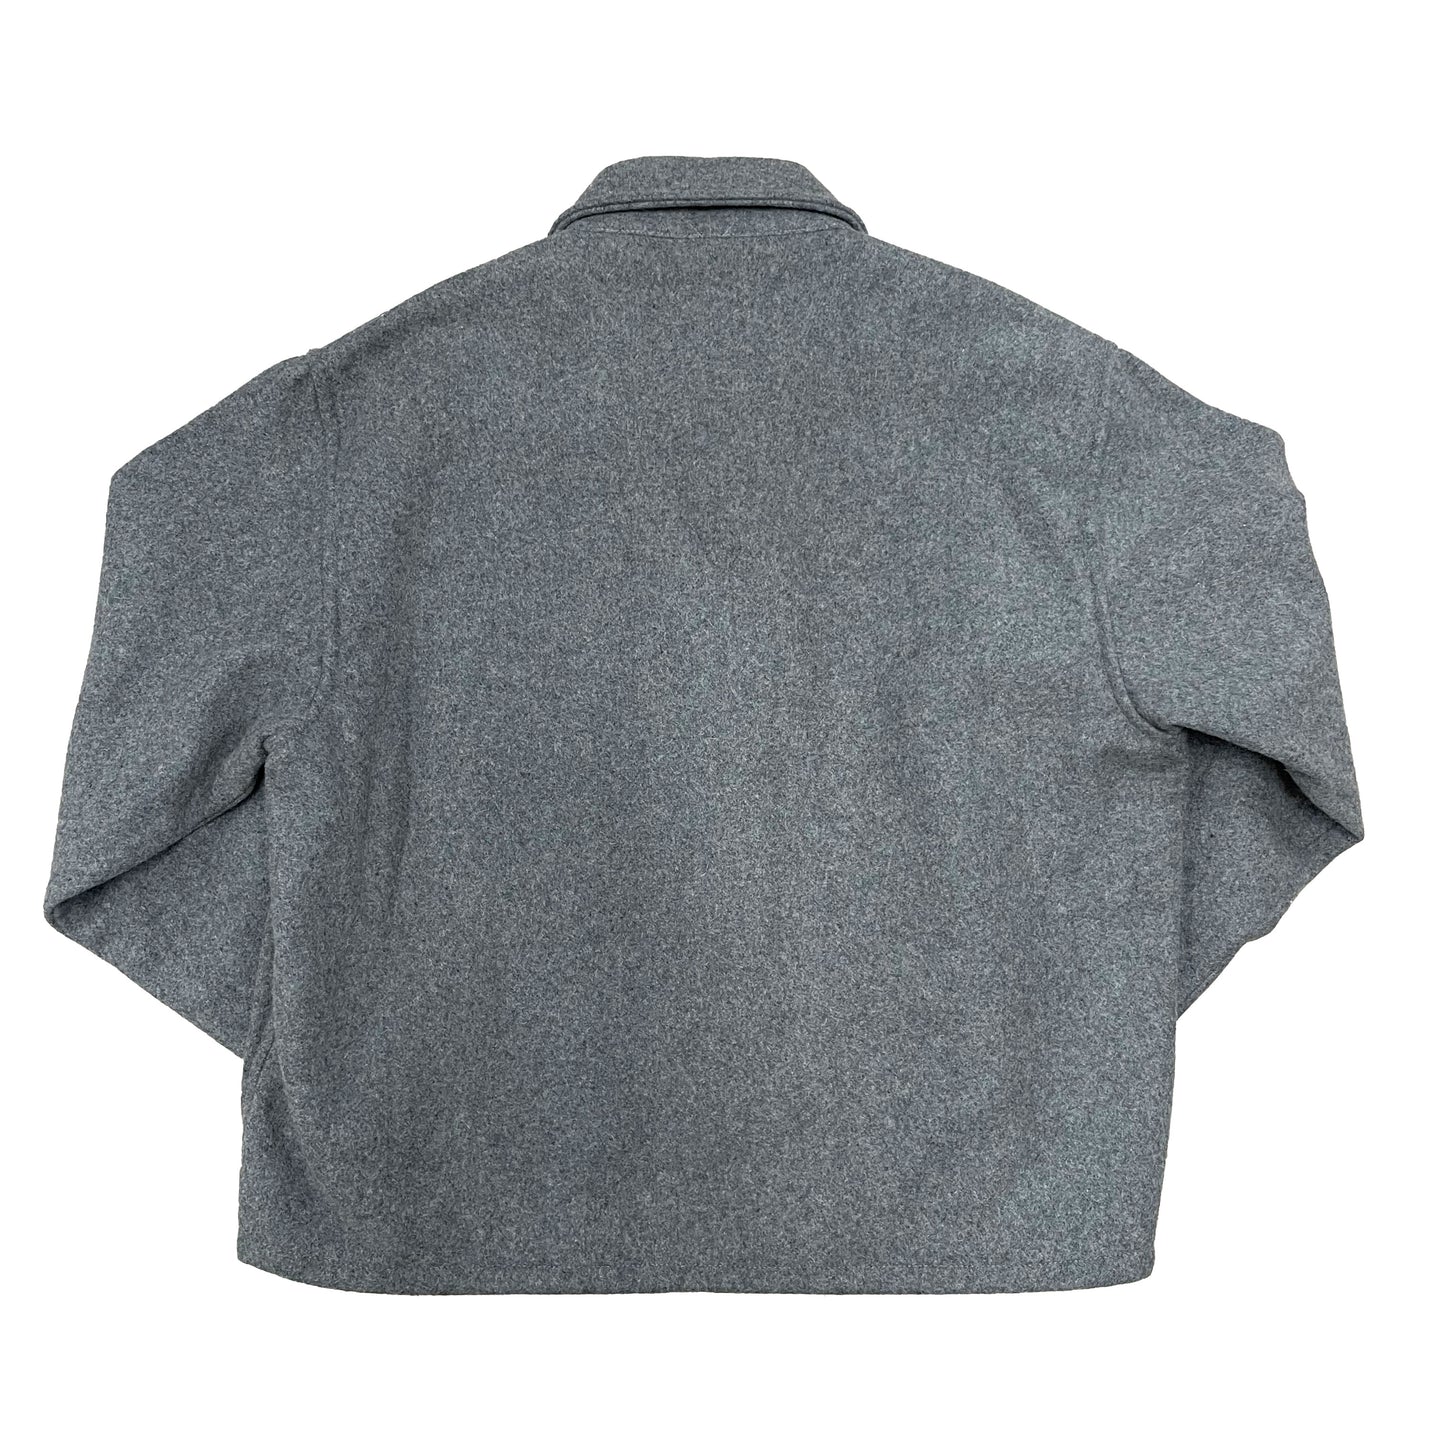 Back side of Gray wool field jacket